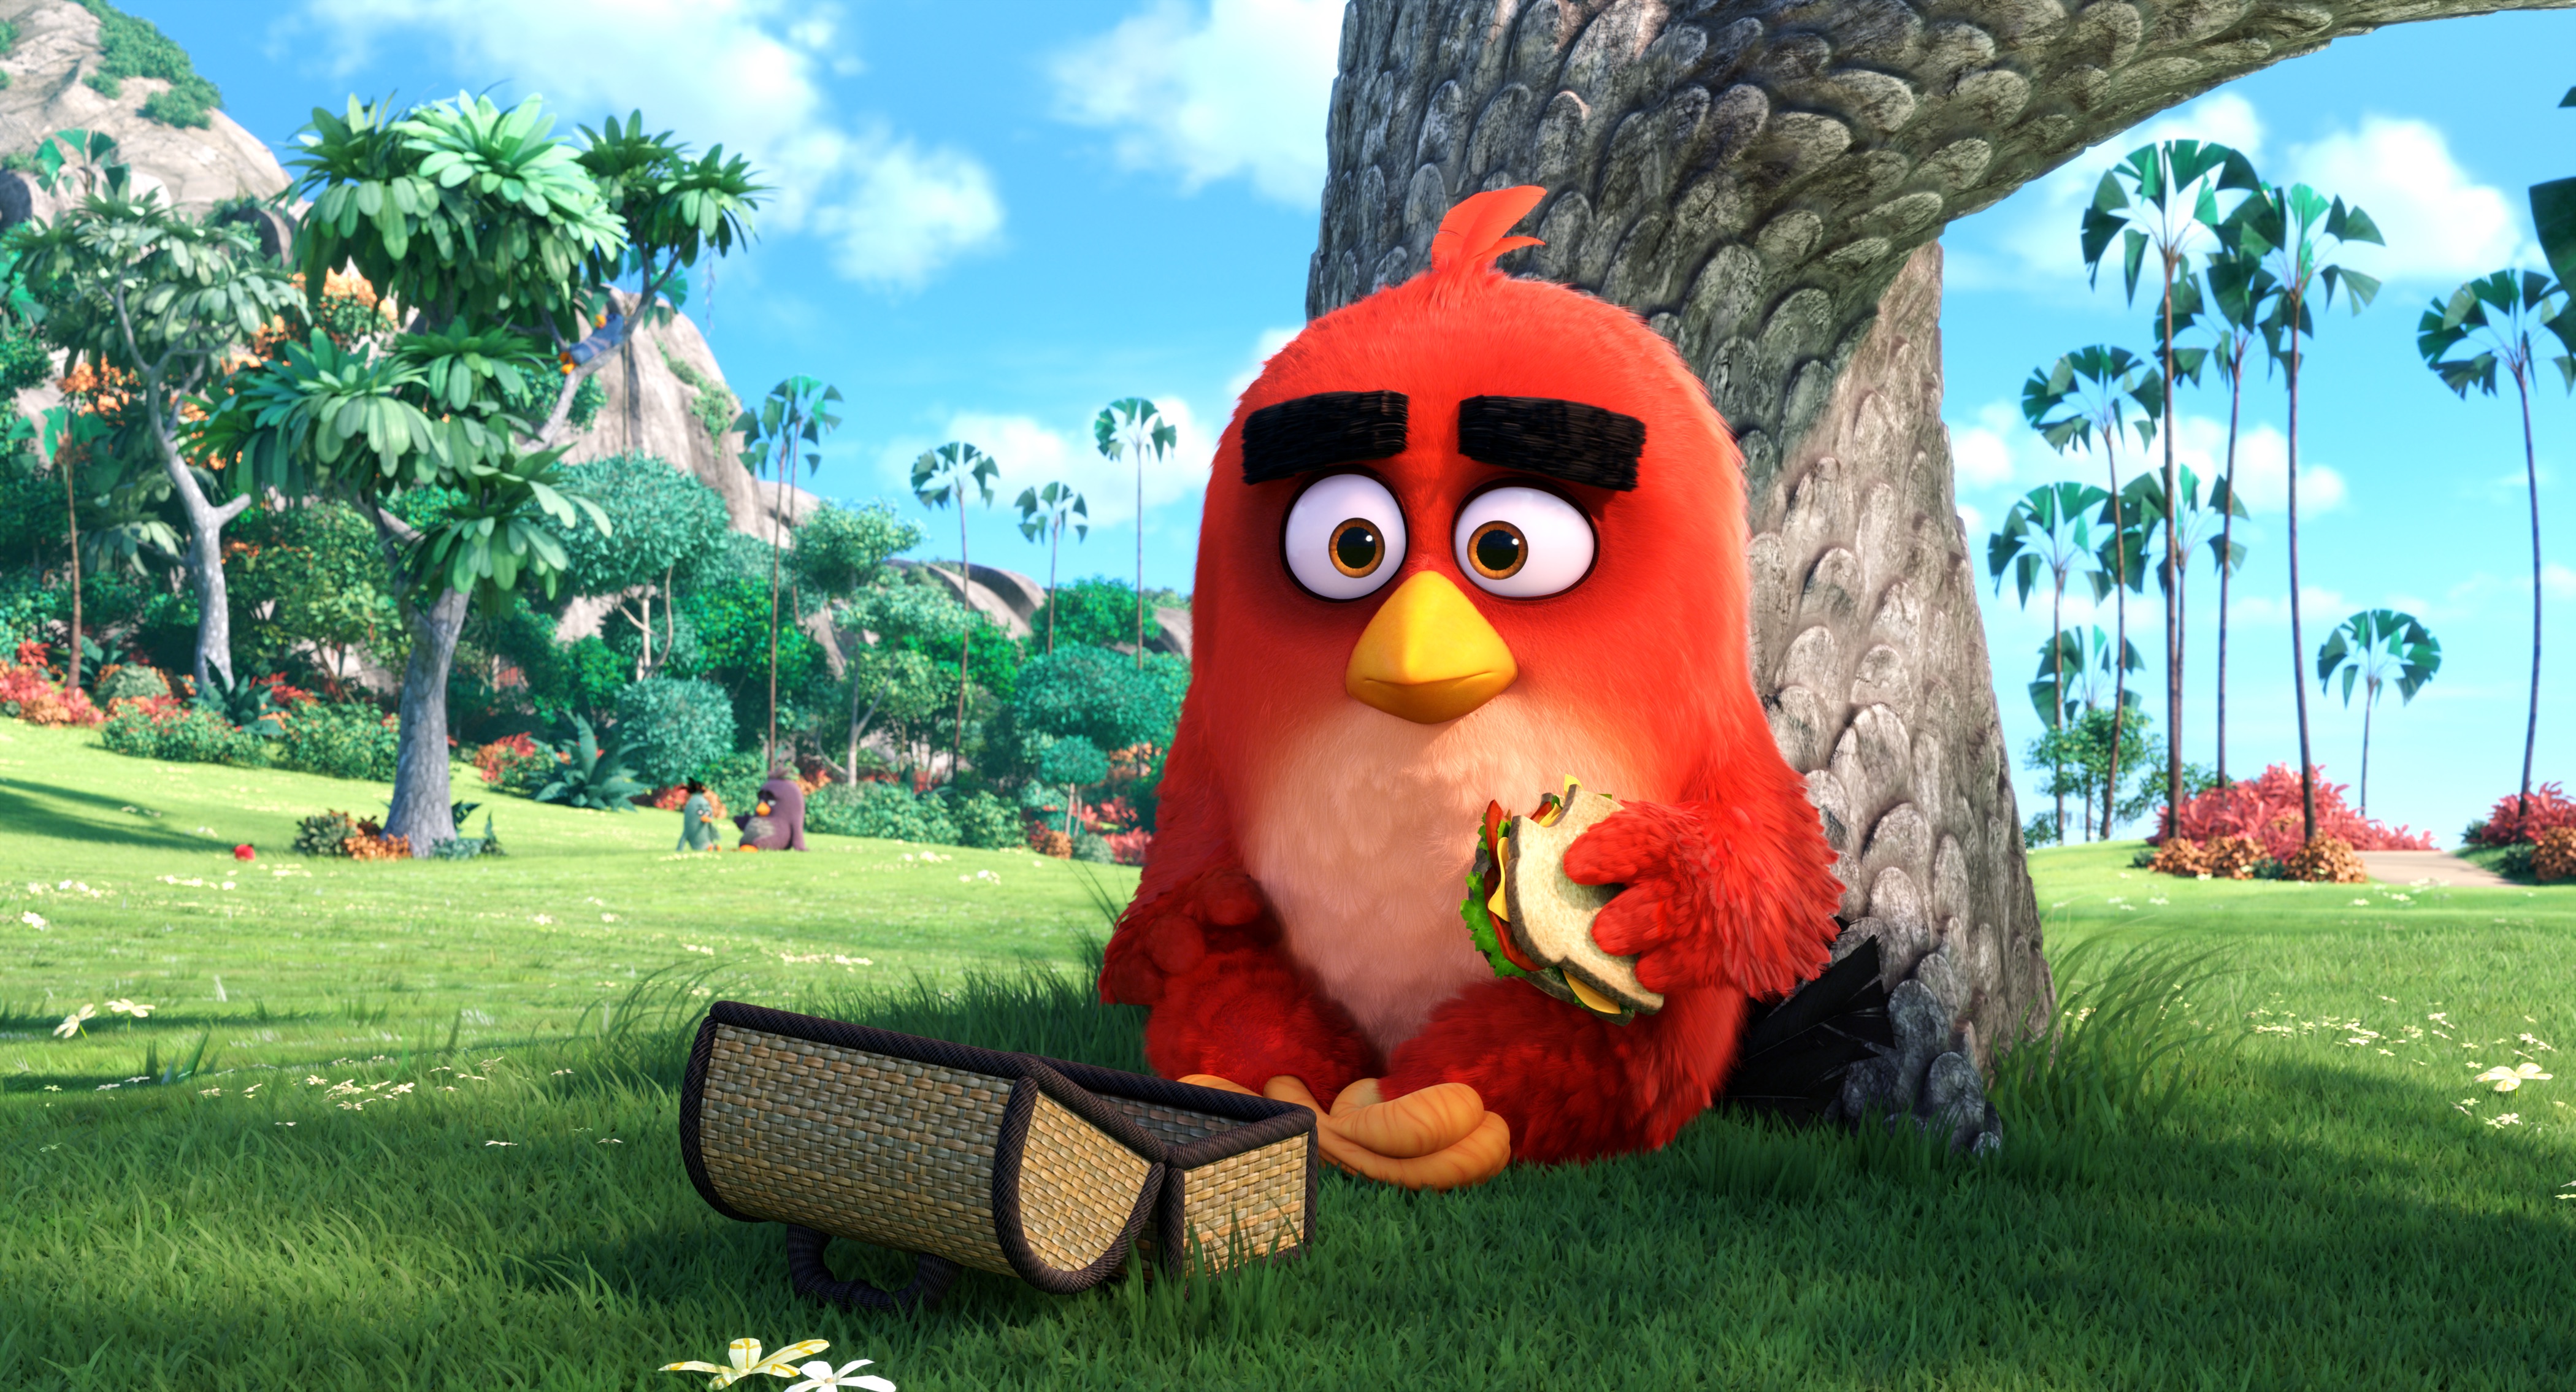 Cinema: Filme baseado no jogo Angry Birds ganha seu primeiro trailer